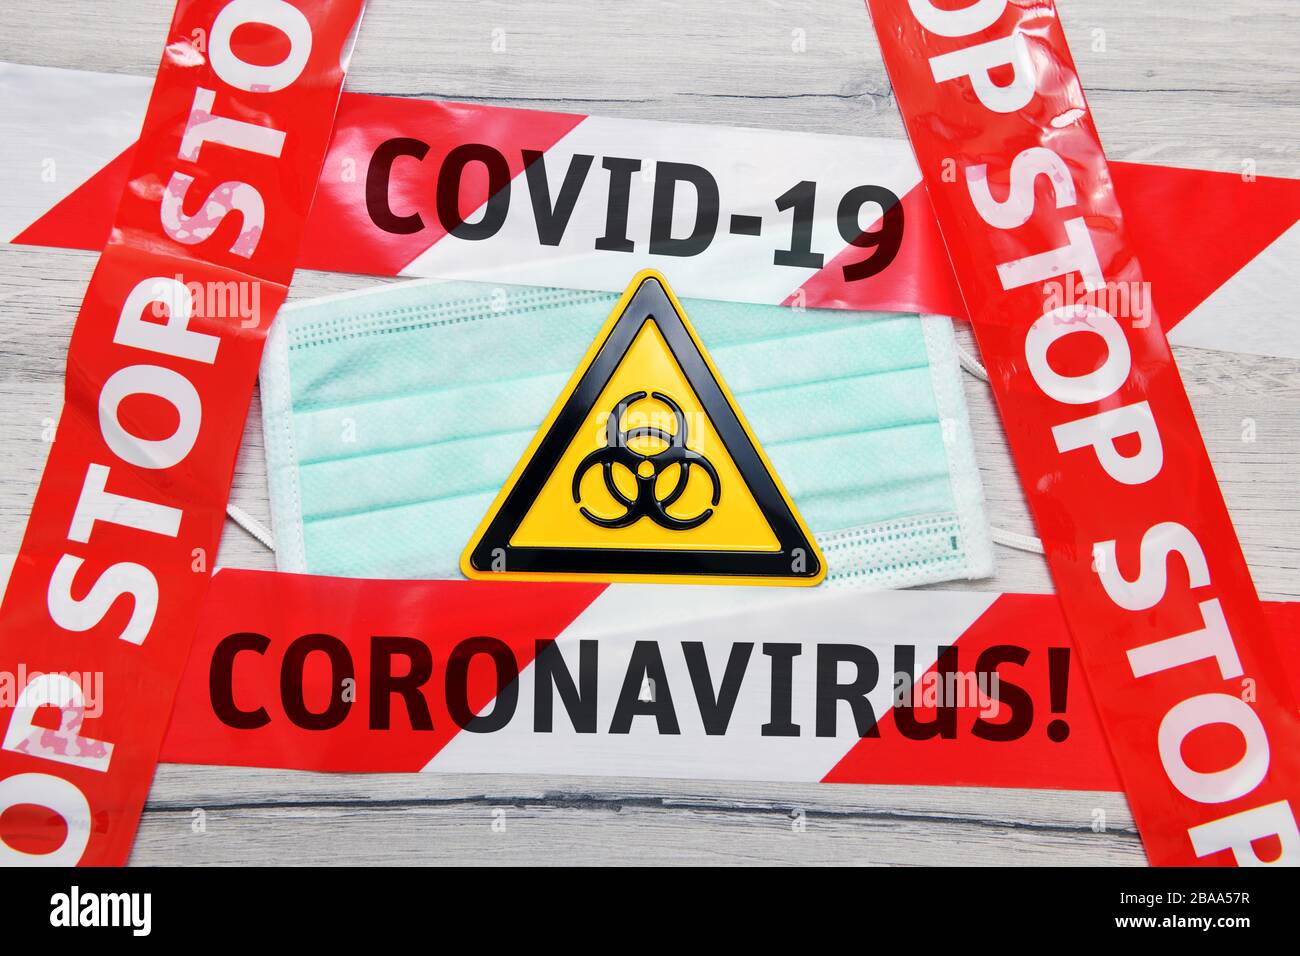 PHOTOMONTAGE, biologie danger signe sur le masque avec bande d'arrêt, photo symbolique Coronavirus, FOTOMONTAGE, Biogefährdungsschild auf Mundschutz mit Absperrband Banque D'Images